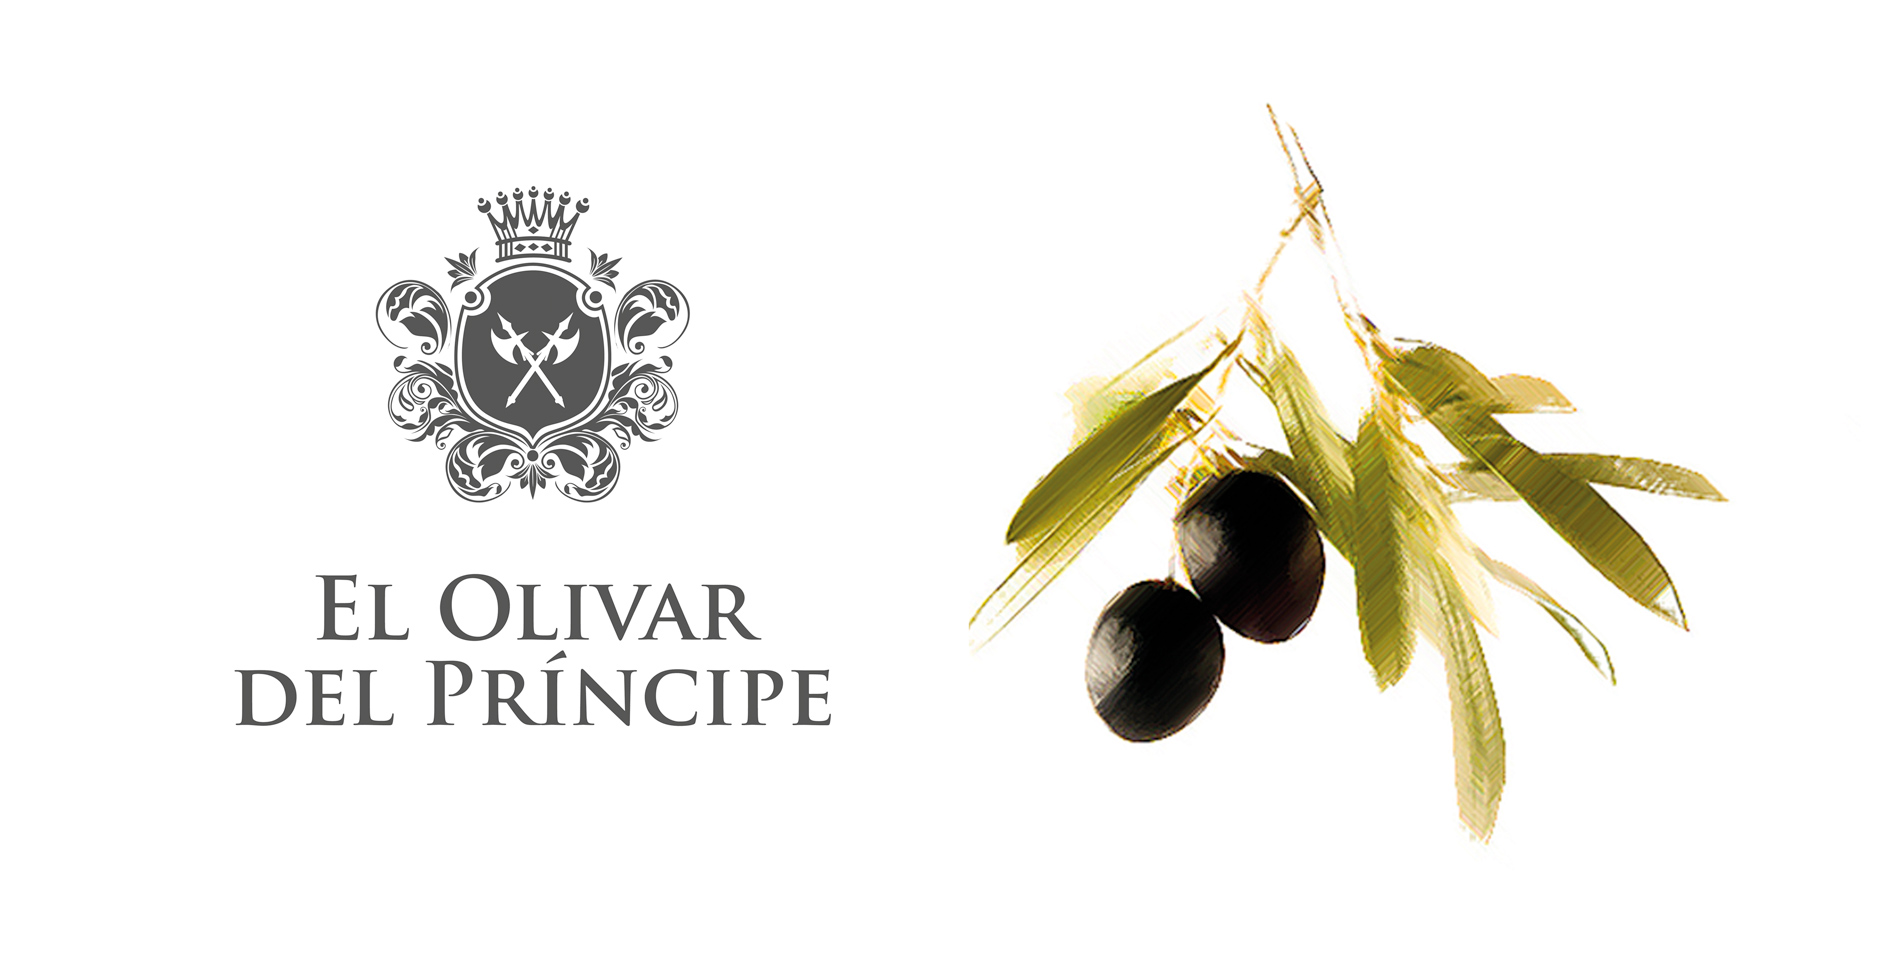 Portfolio of graphic and creative design works of extra virgin olive oil label design and packaging for EL OLIVAR DEL PRINCIPE